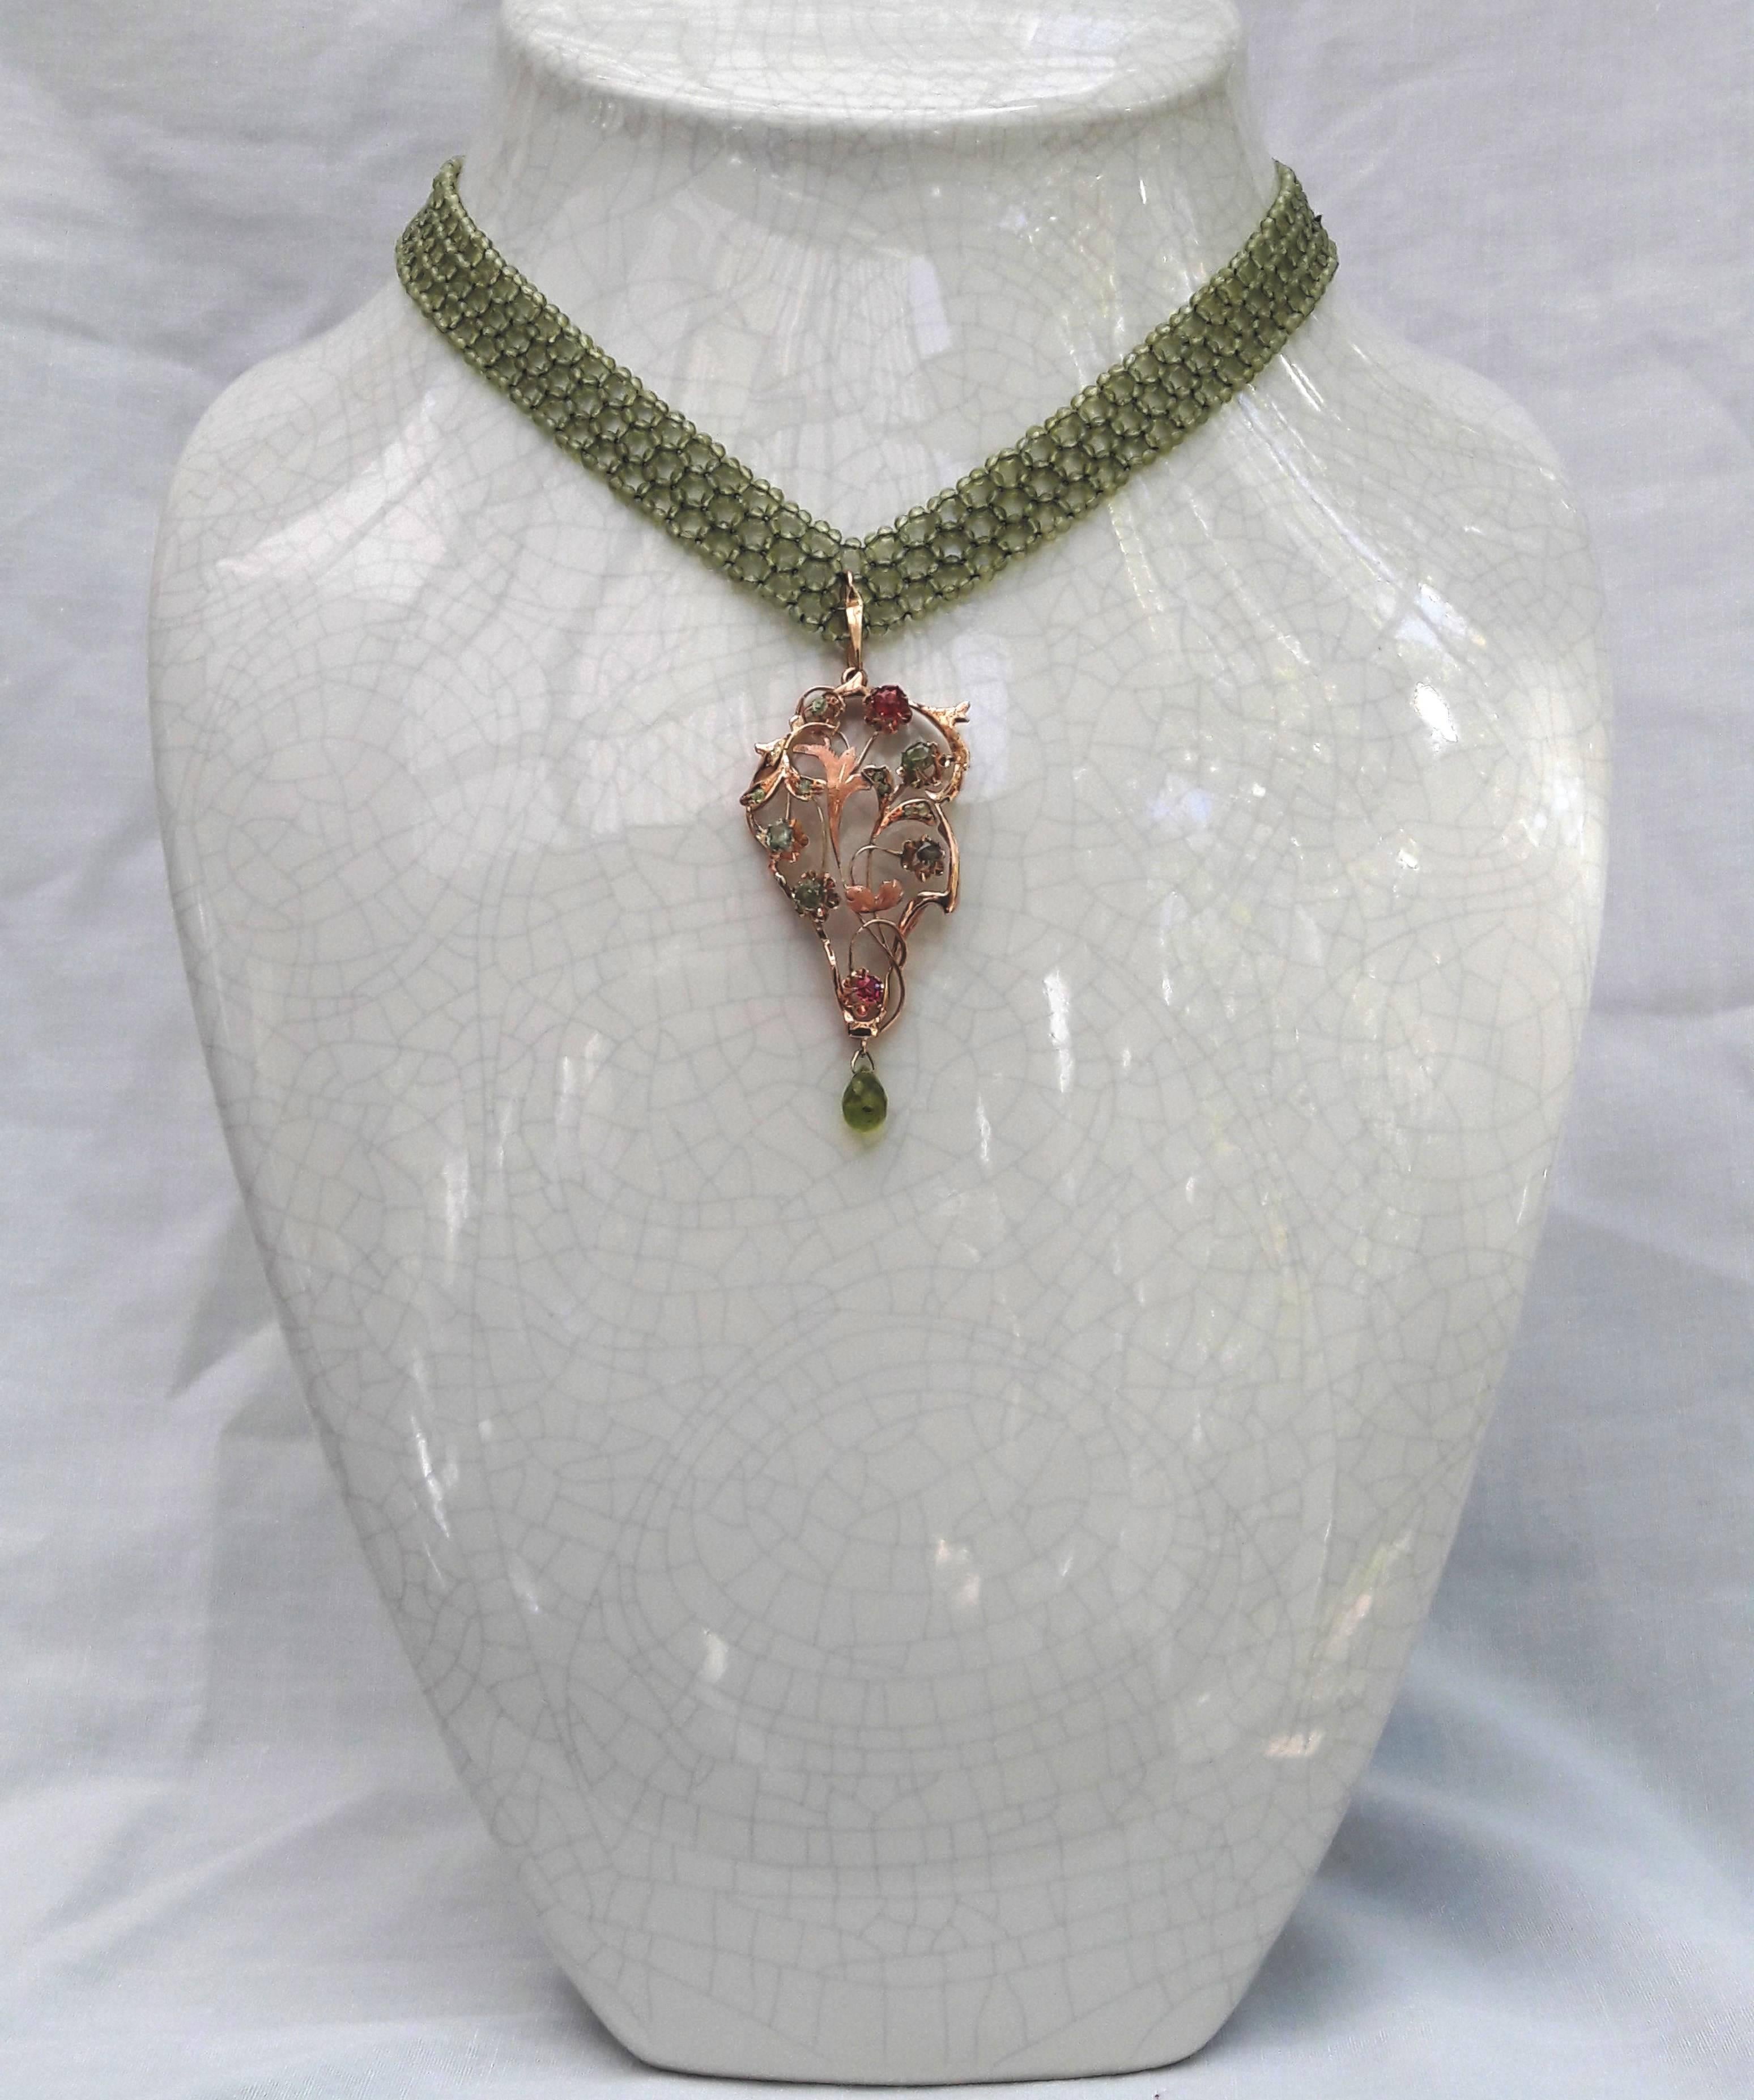 Le collier est composé de perles de péridot fines et facettées de 1,5 mm, et tissé dans un ruban plat en forme de V. Suspendu au centre, un pendentif amovible en or jaune 14 carats, délicieusement détaillé dans un motif floral et scintillant avec